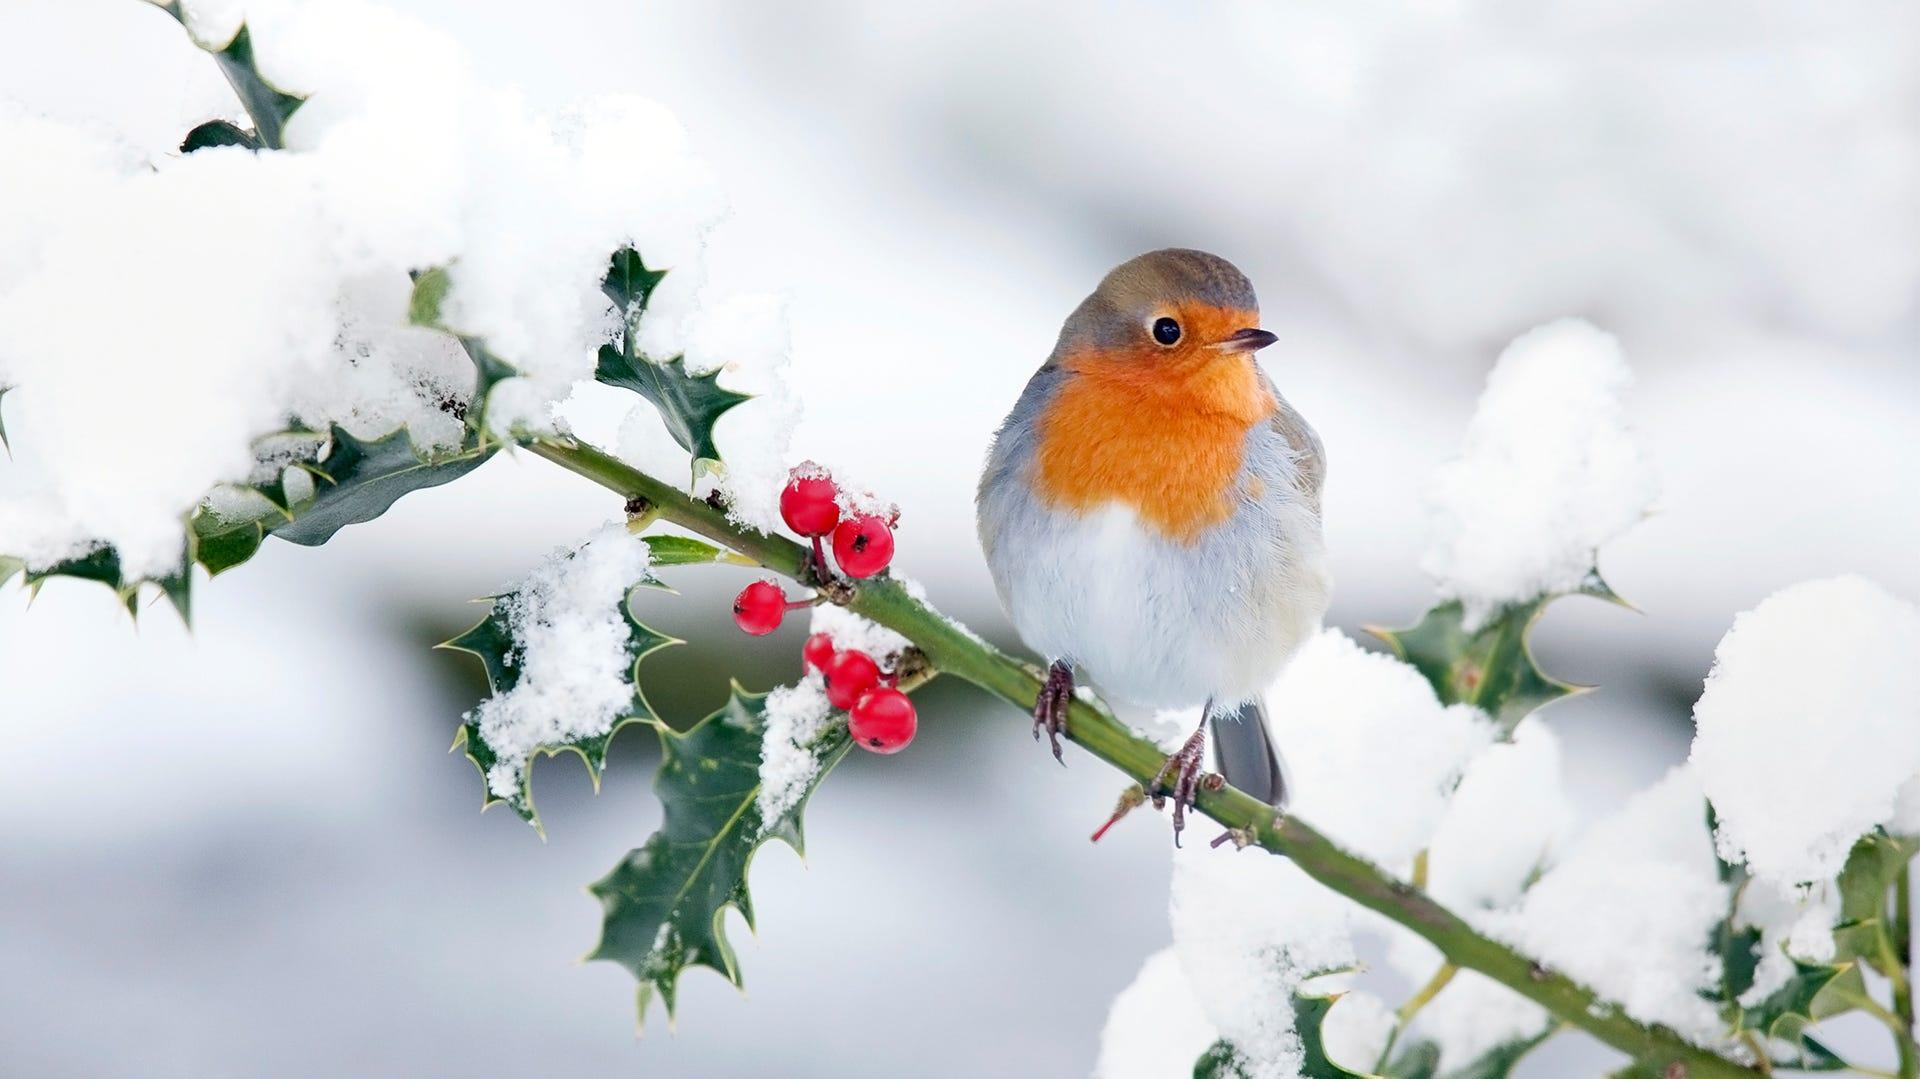 How Birds Survive In Winter Weather